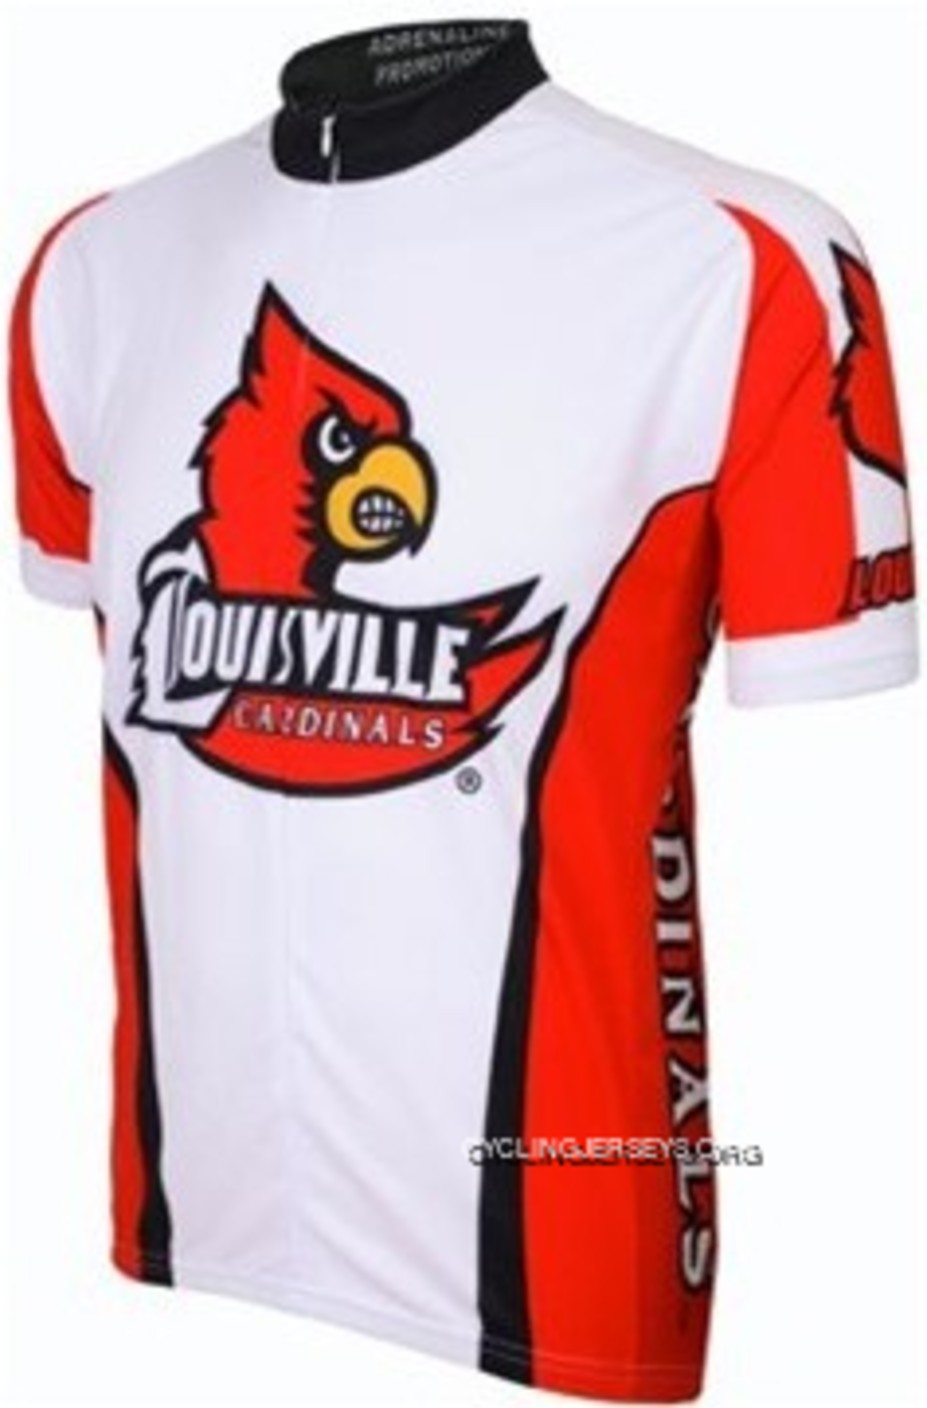 Louisville Cardinals Cycling Short Sleeve Jersey Super Deals